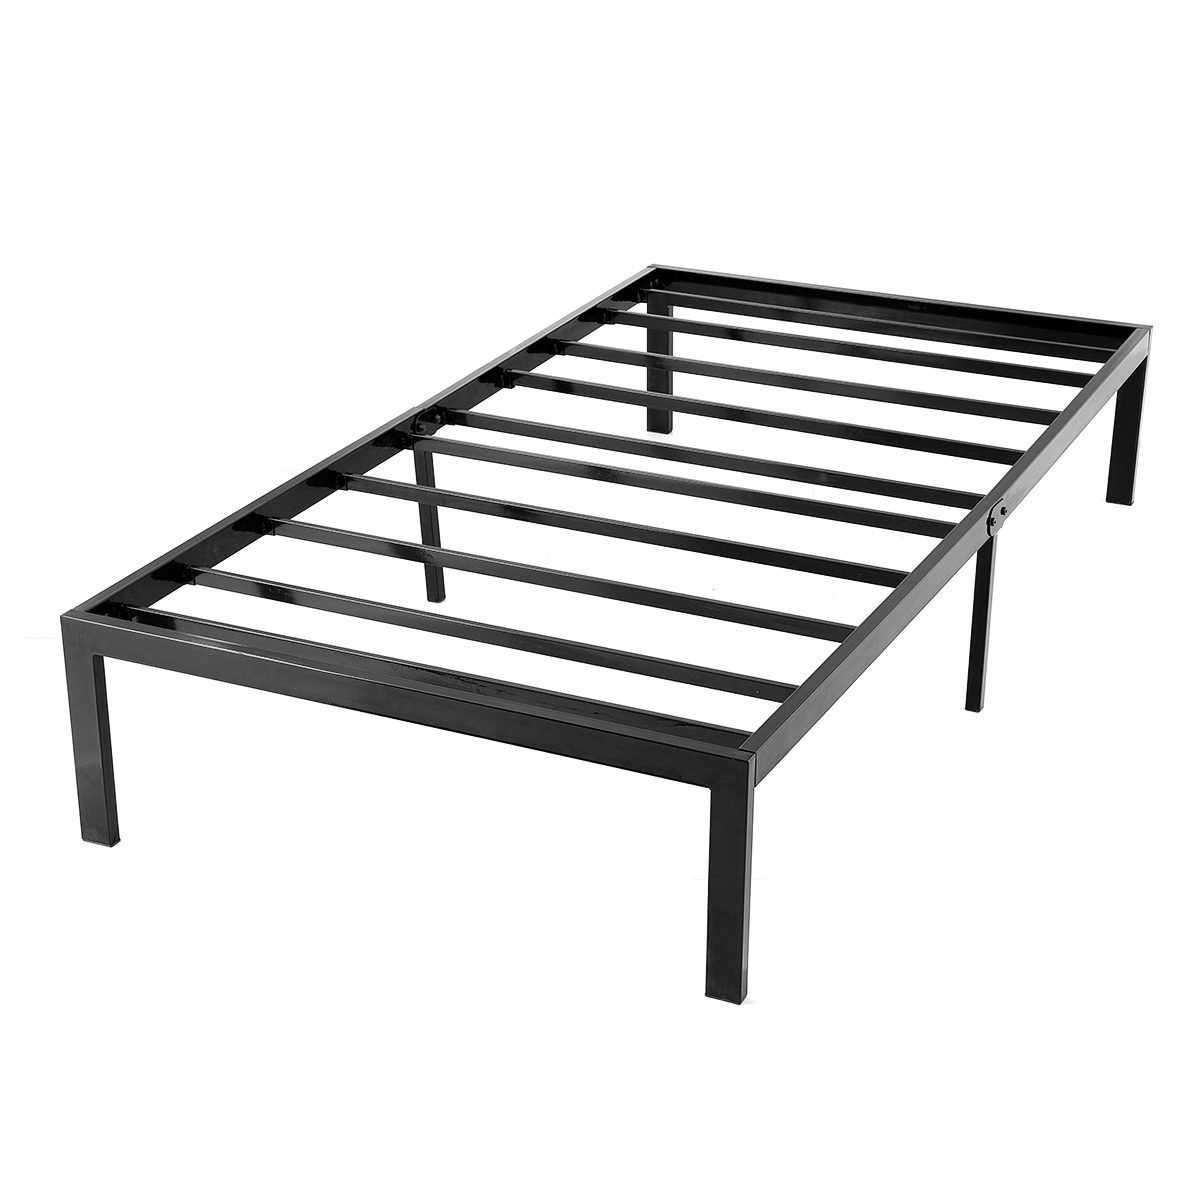 Metal Platform Bed Frame With Storage, Black Metal Twin Bed Frame